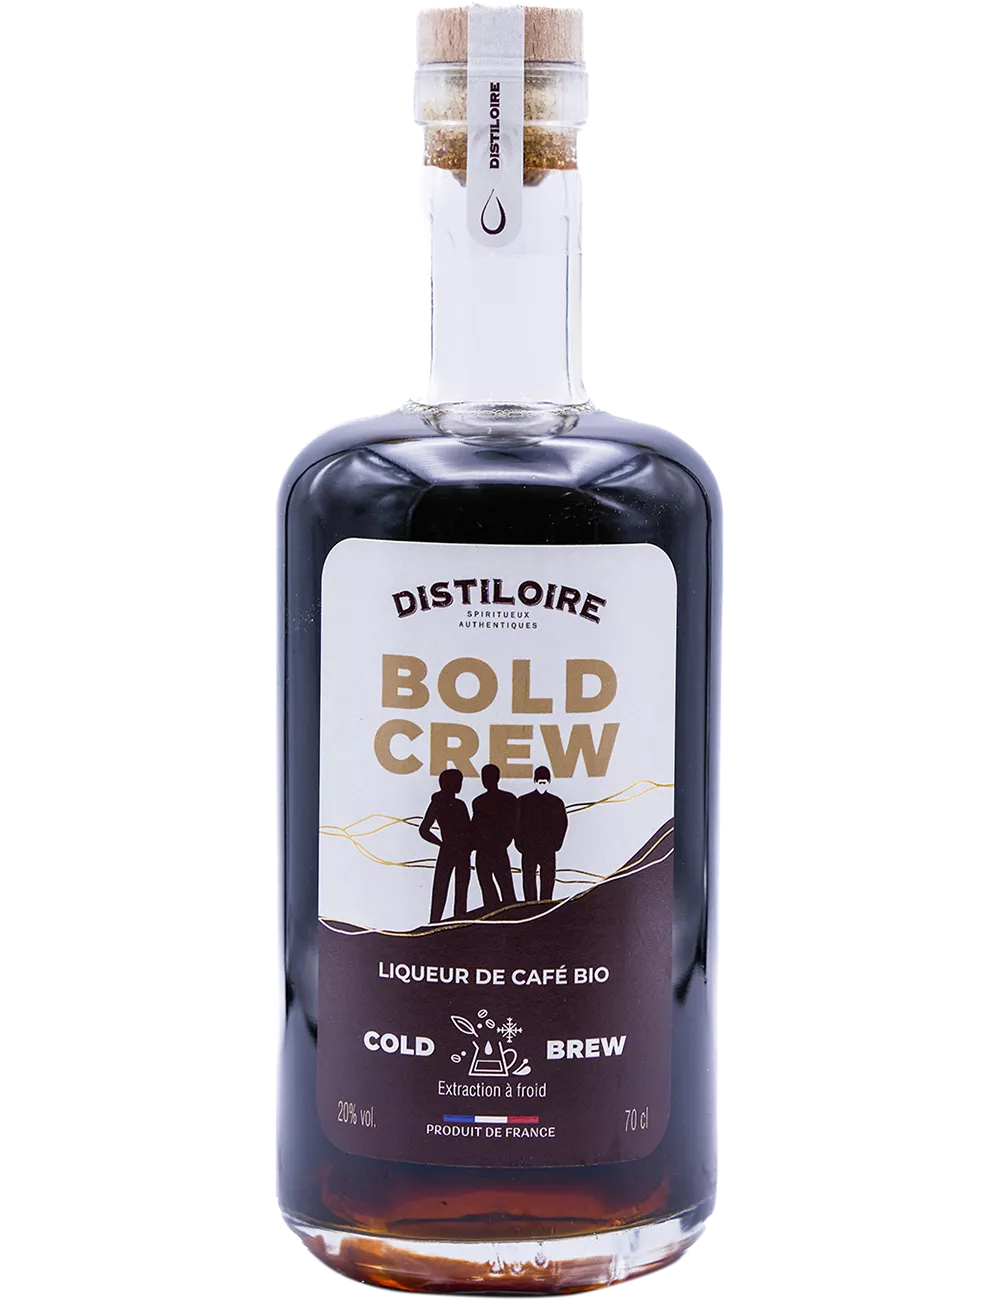 Distiloire - Bold Crew - Café - Liqueur